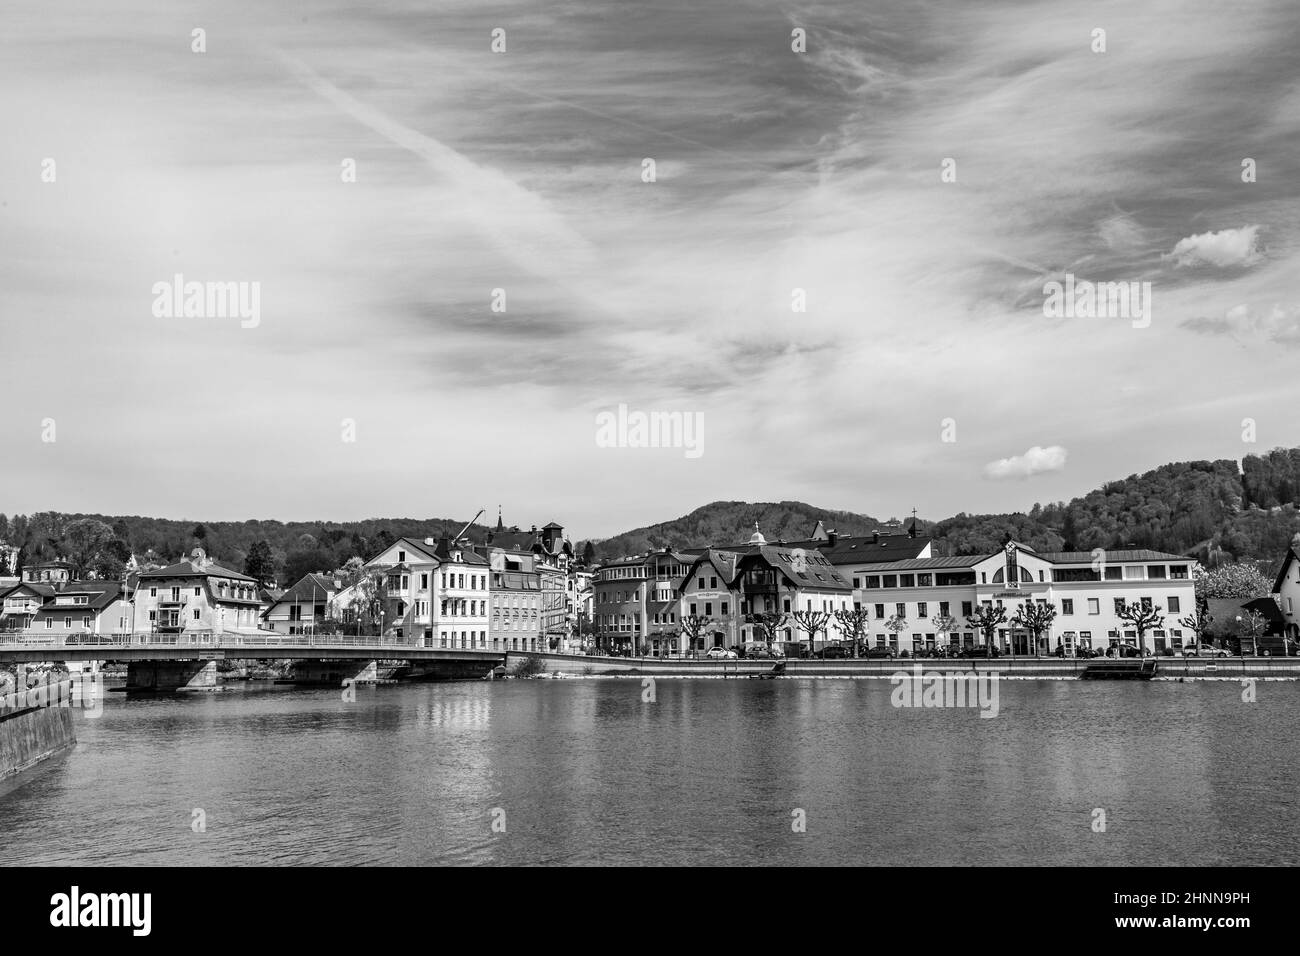 village of Gmunden in Austria Stock Photo